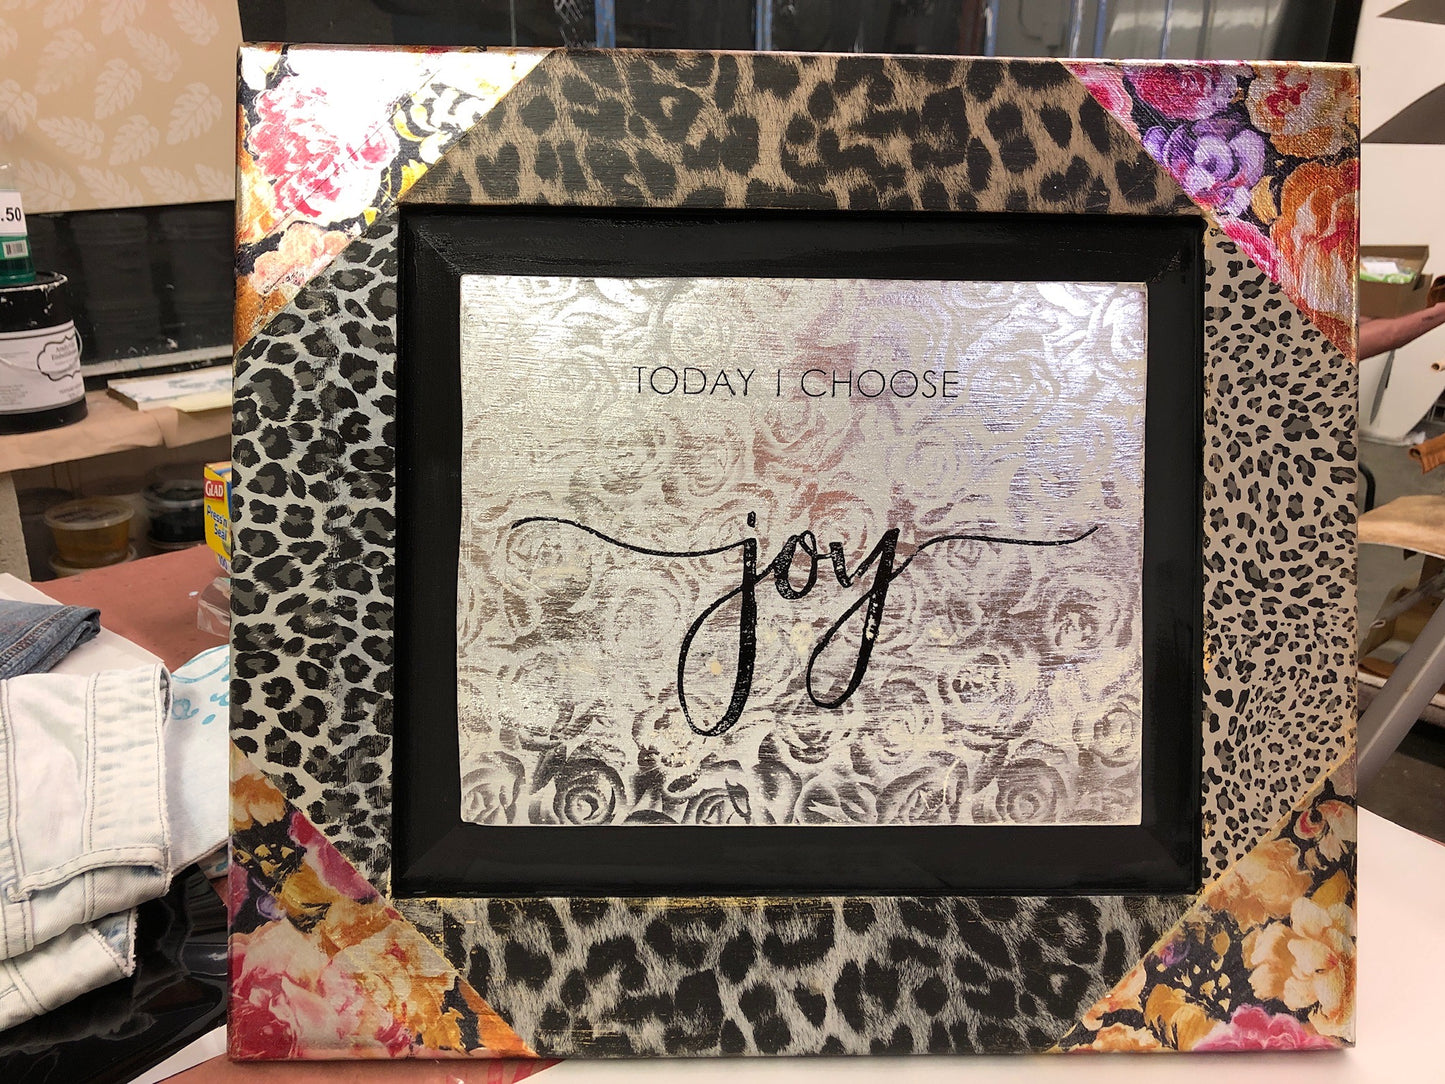 Foiled Frame - "Today I Choose Joy"